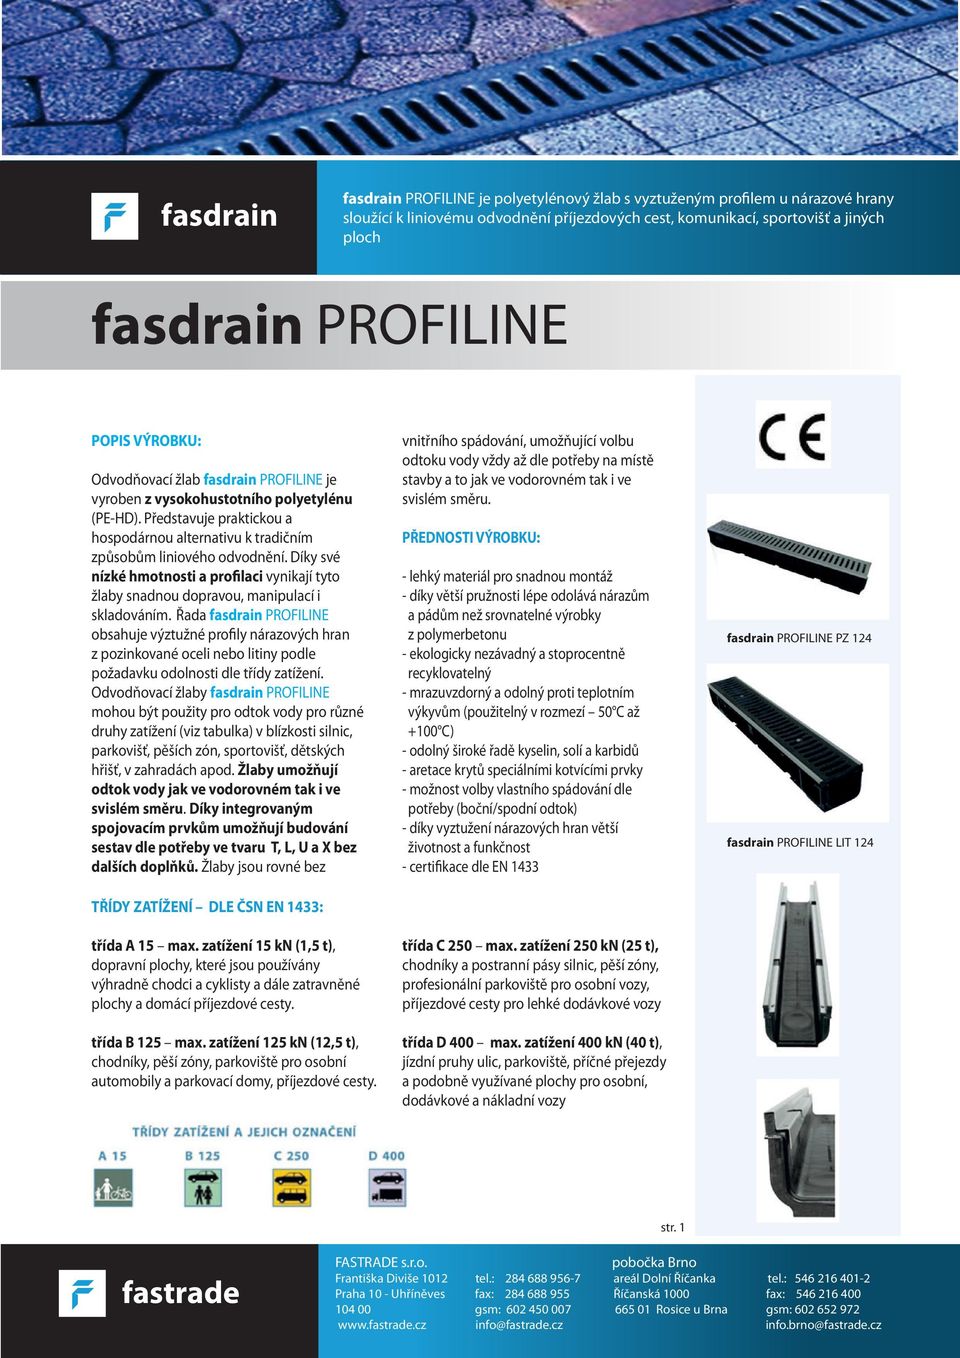 Řada fasdrain PROFILINE obsahuje výztužné profily nárazových hran z pozinkované oceli nebo litiny podle požadavku odolnosti dle třídy zatížení.